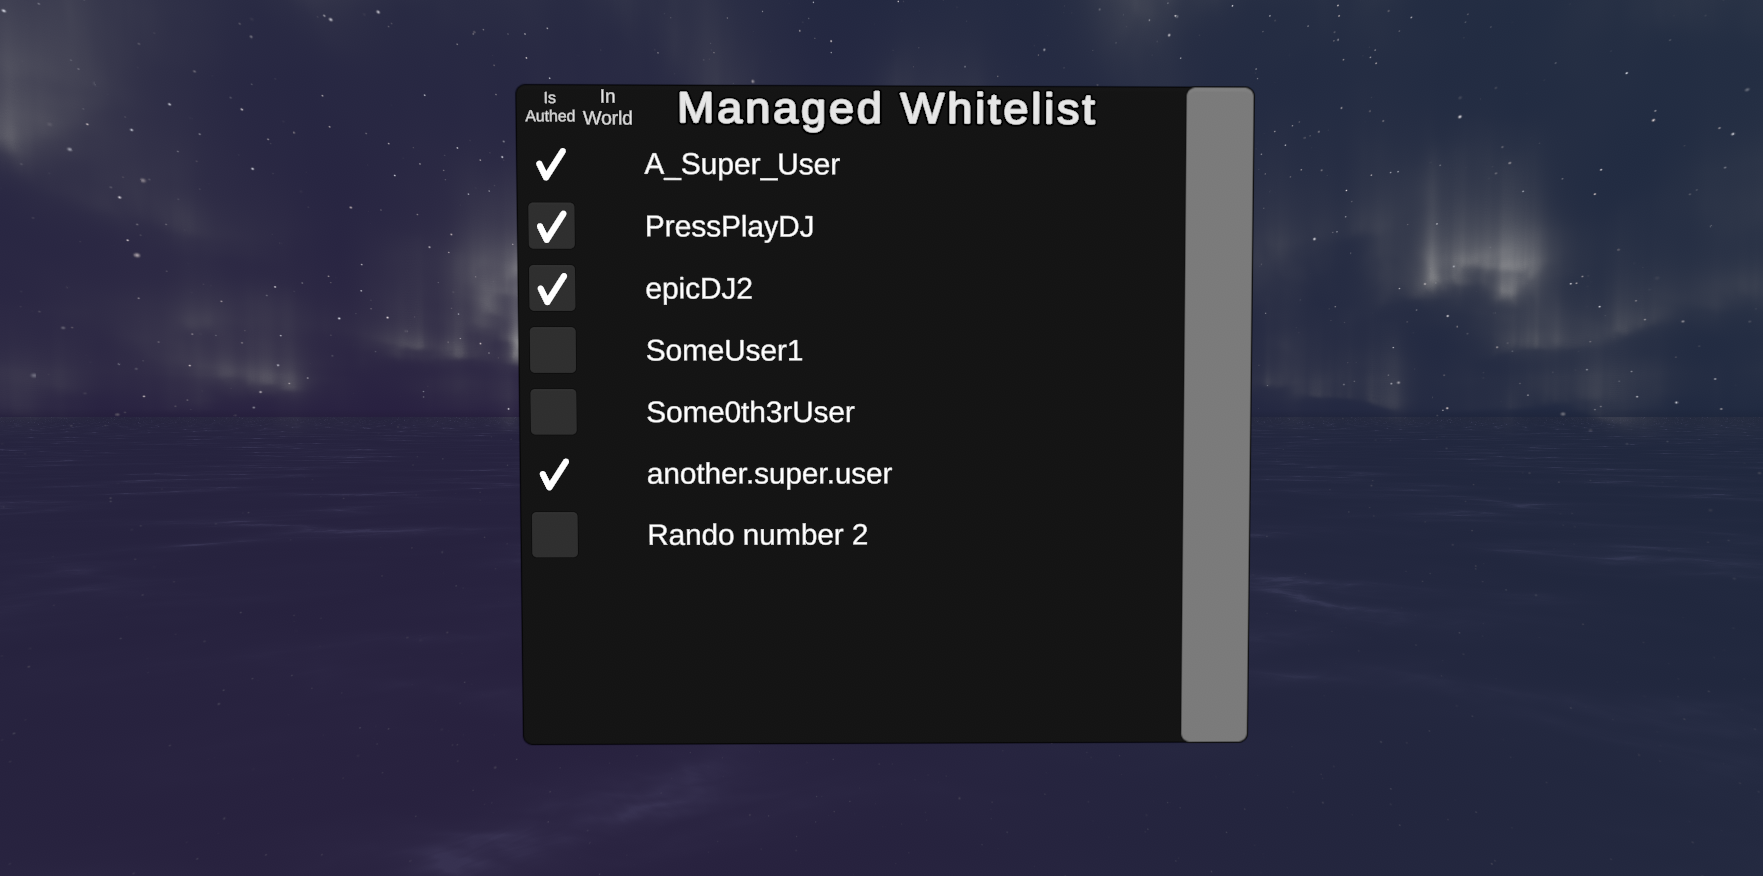 Example of the TV Managed Whitelist UI